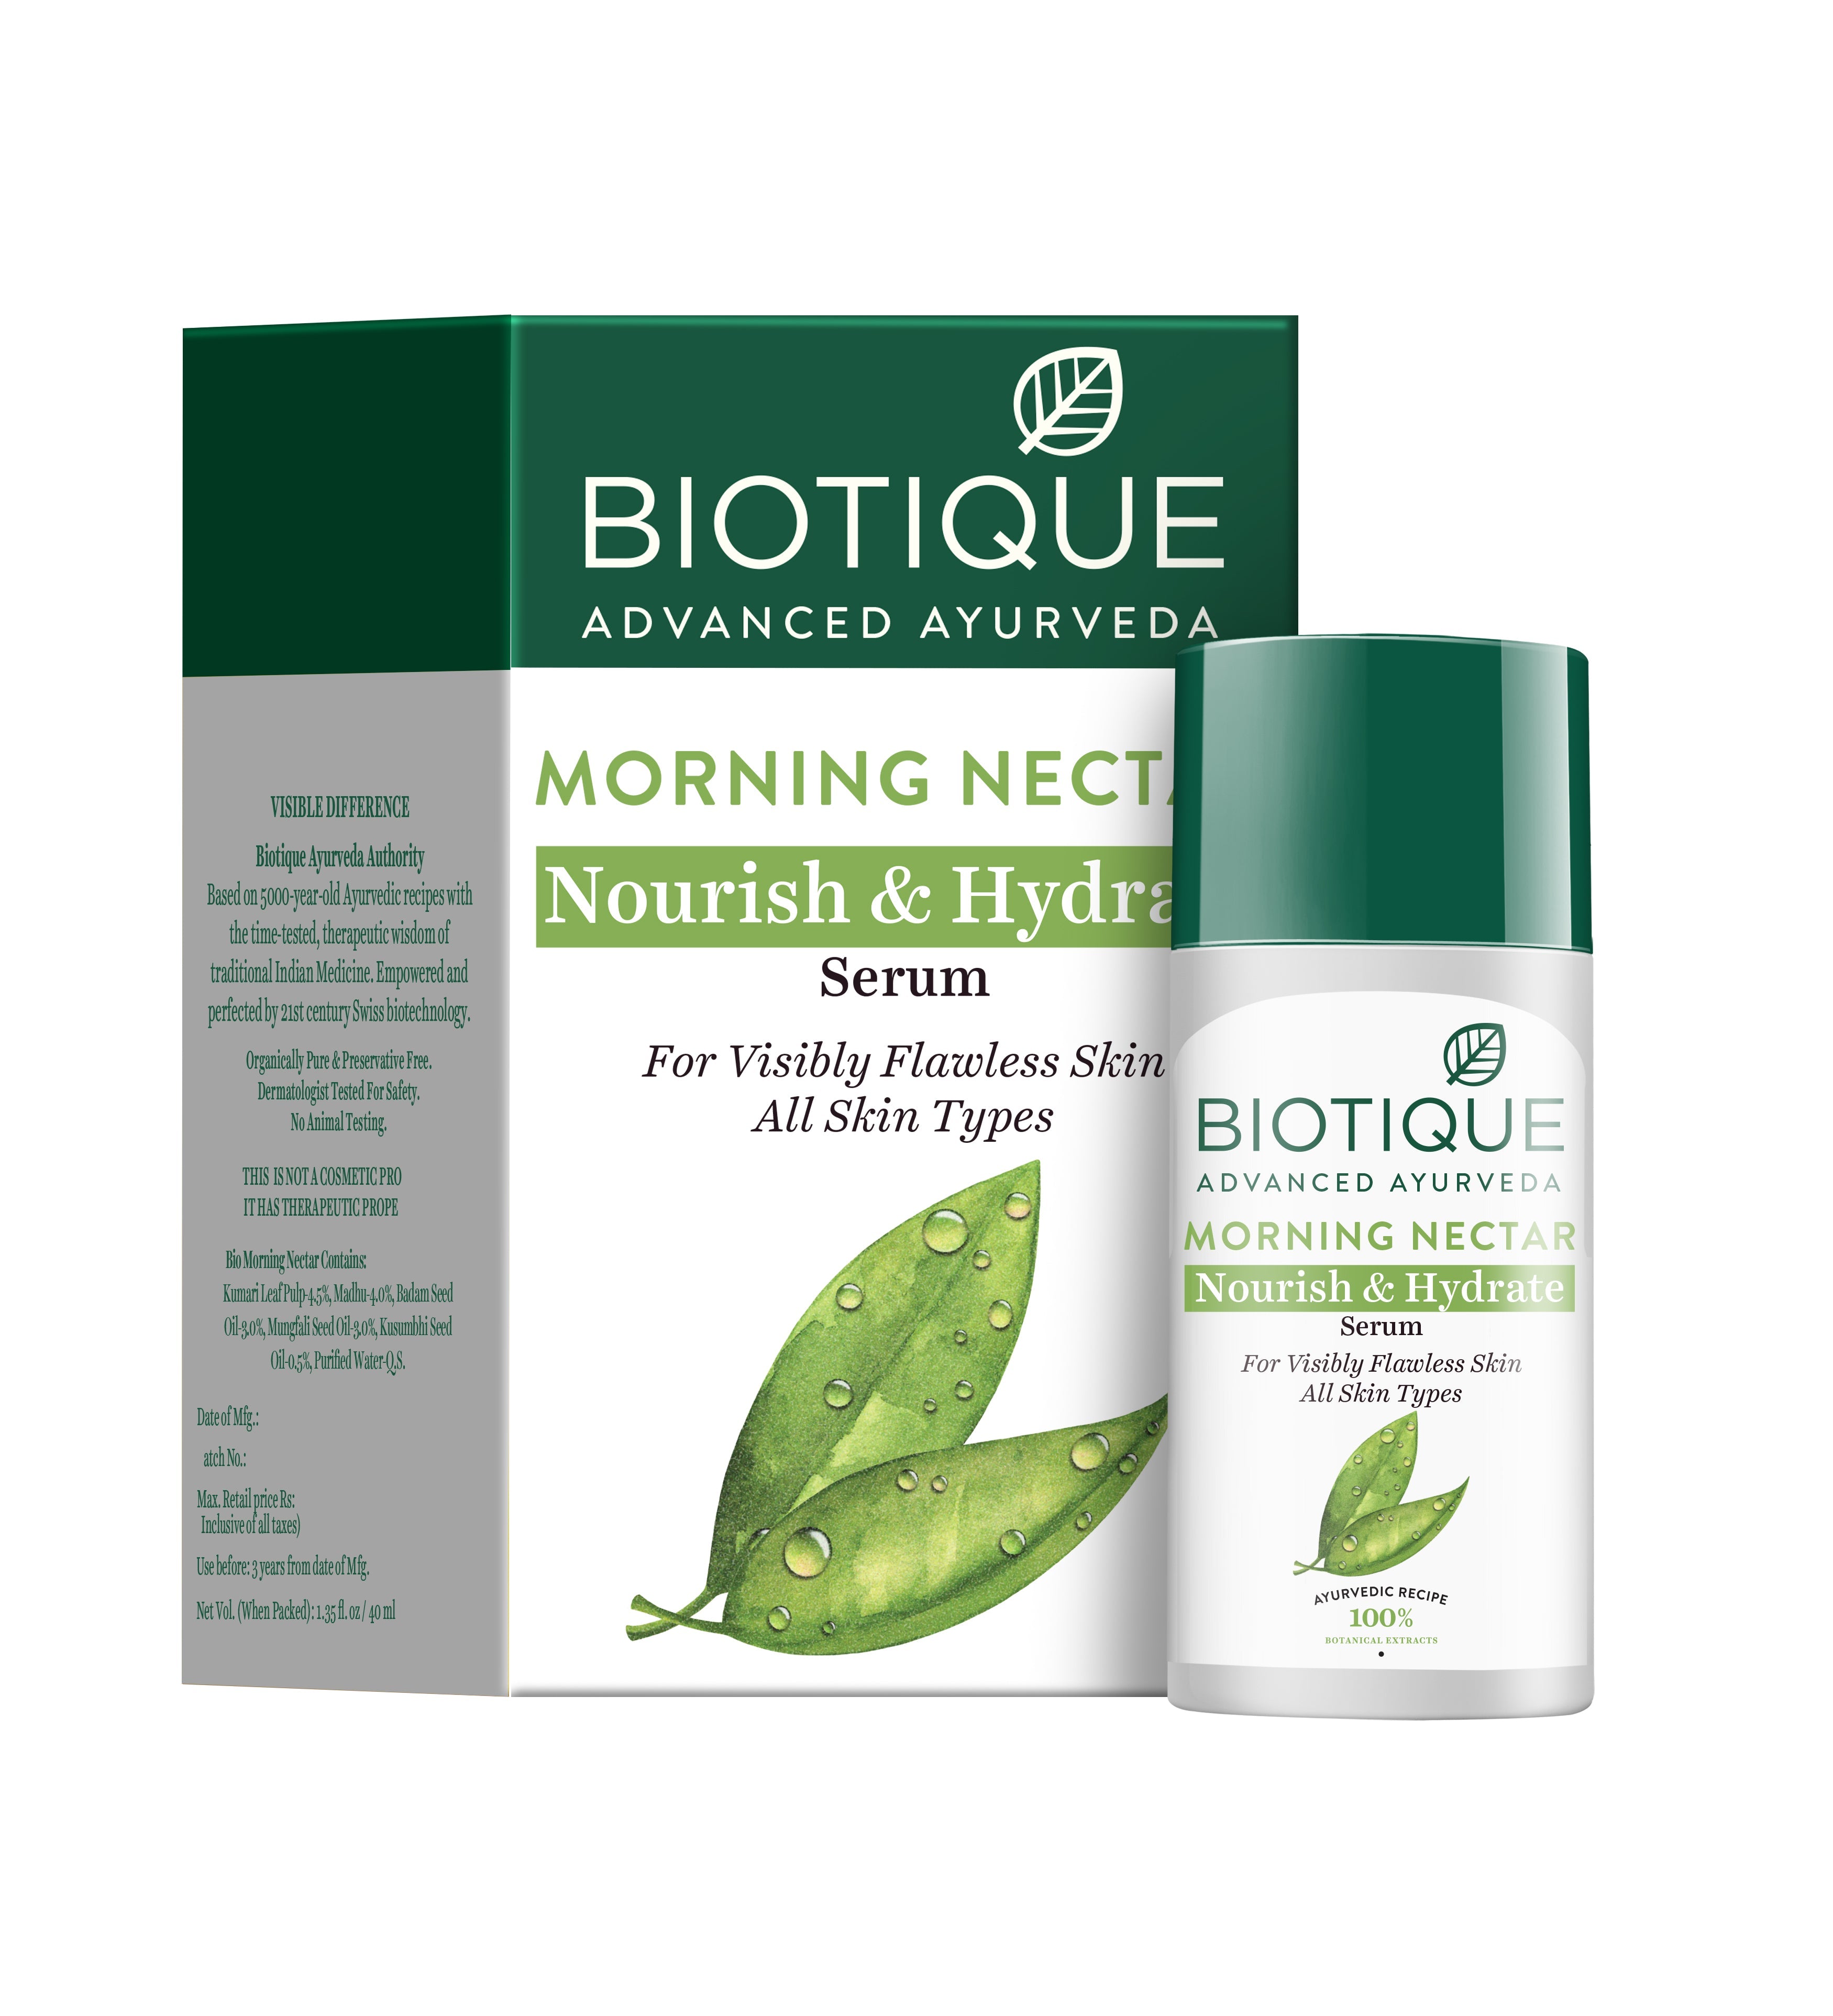 MORNING NECTAR Nourish & Hydrate SERUM, Biotique (УТРЕННИЙ НЕКТАР Питательная и увлажняющая СЫВОРОТКА для лица, Для всех типов кожи, Биотик), 40 мл.